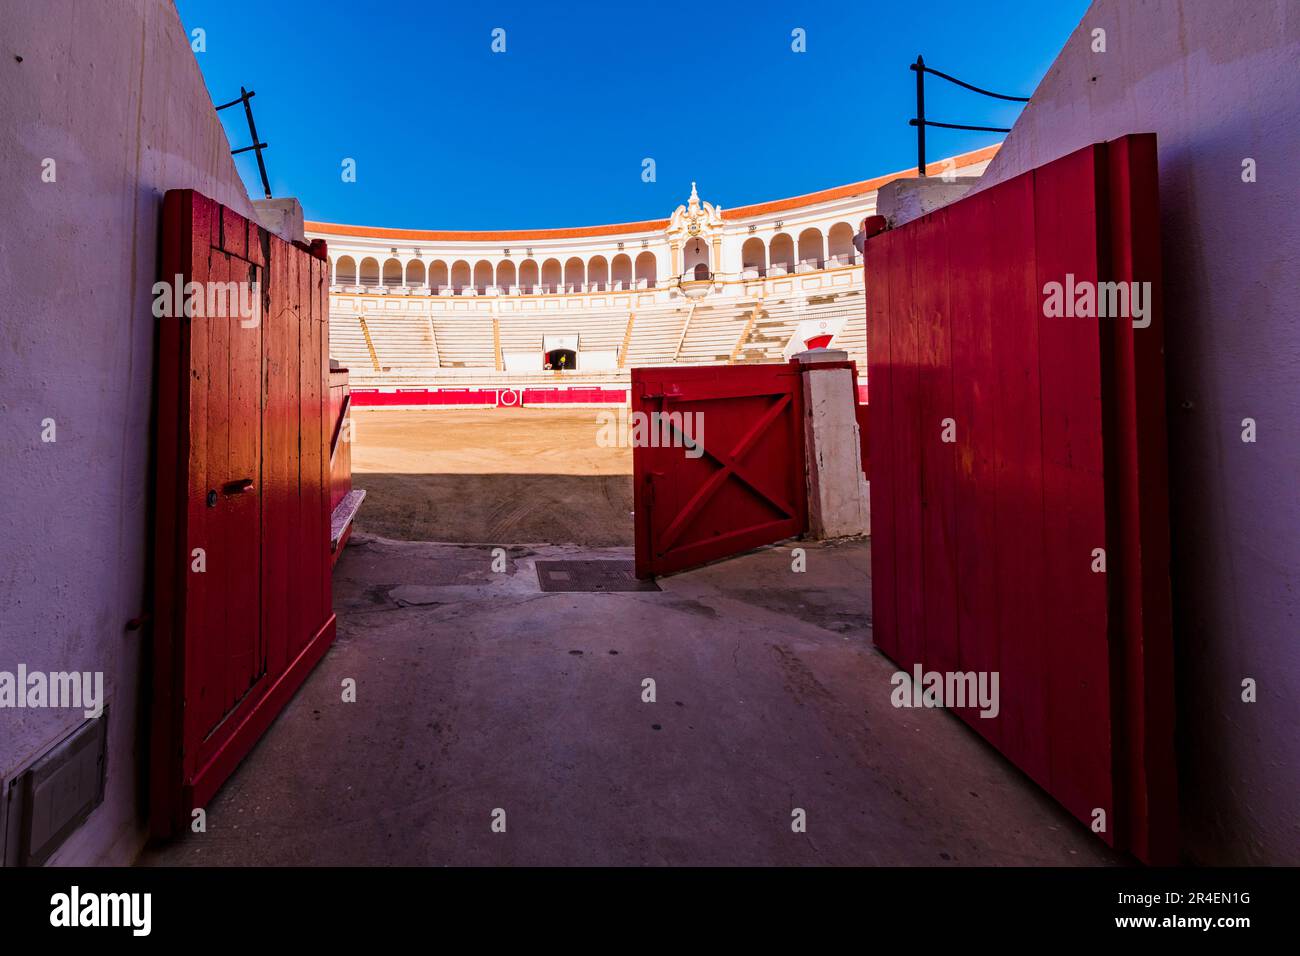 Arena oder Ruedo, ein Feld mit dicht gepacktem zerdrücktem Felsen, Albero, das die Bühne für den Stierkampf ist. Die Stierkampfarena von Melilla, auch bekannt als Moschee Stockfoto